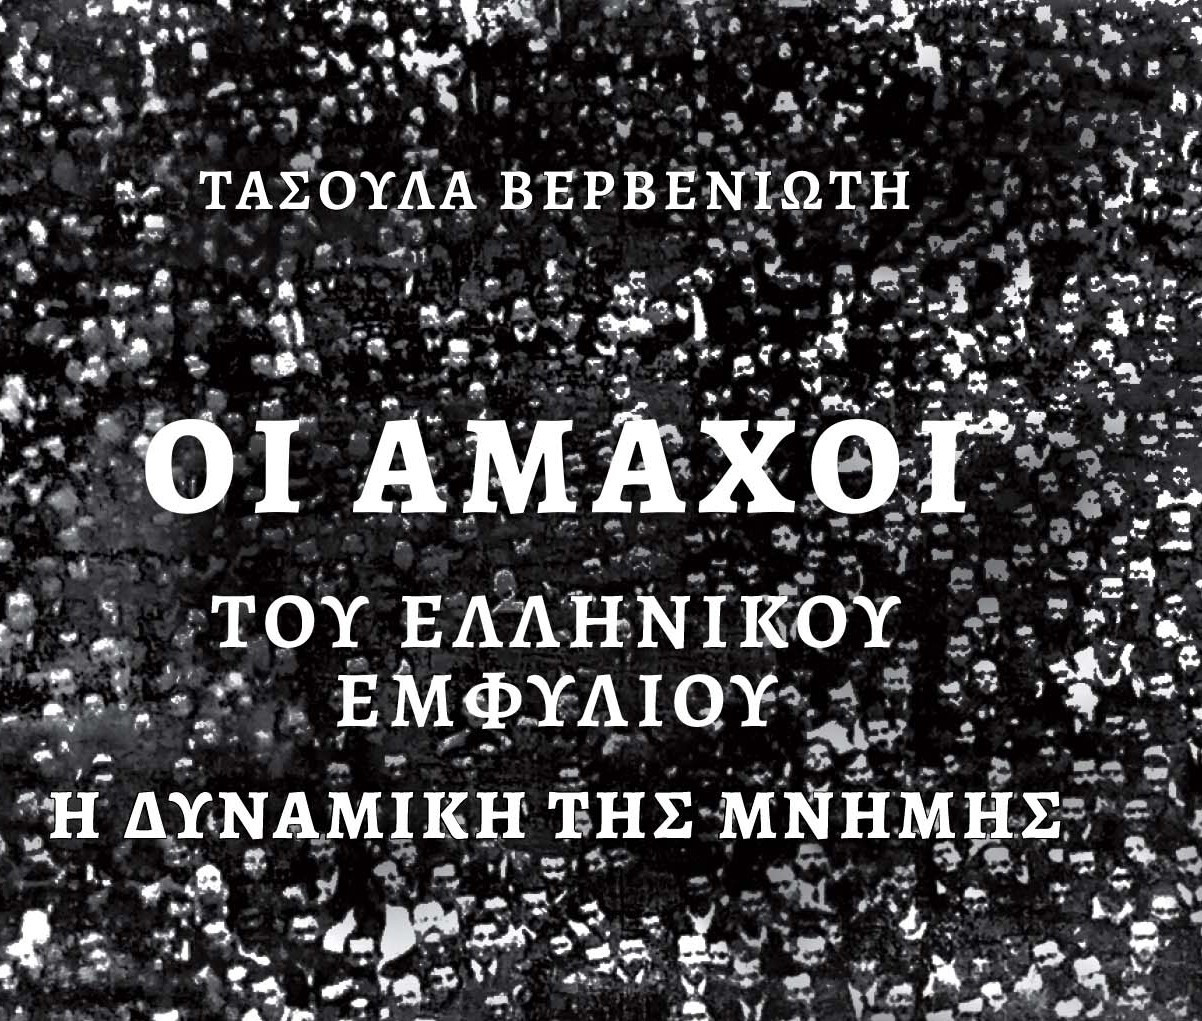 «Οι άμαχοι του ελληνικού εμφυλίου. Η δυναμική της μνήμης»: Το βιβλίο της ιστορικού και ερευνήτριας Τασούλας Βερβενιώτη για τον ελληνικό εμφύλιο